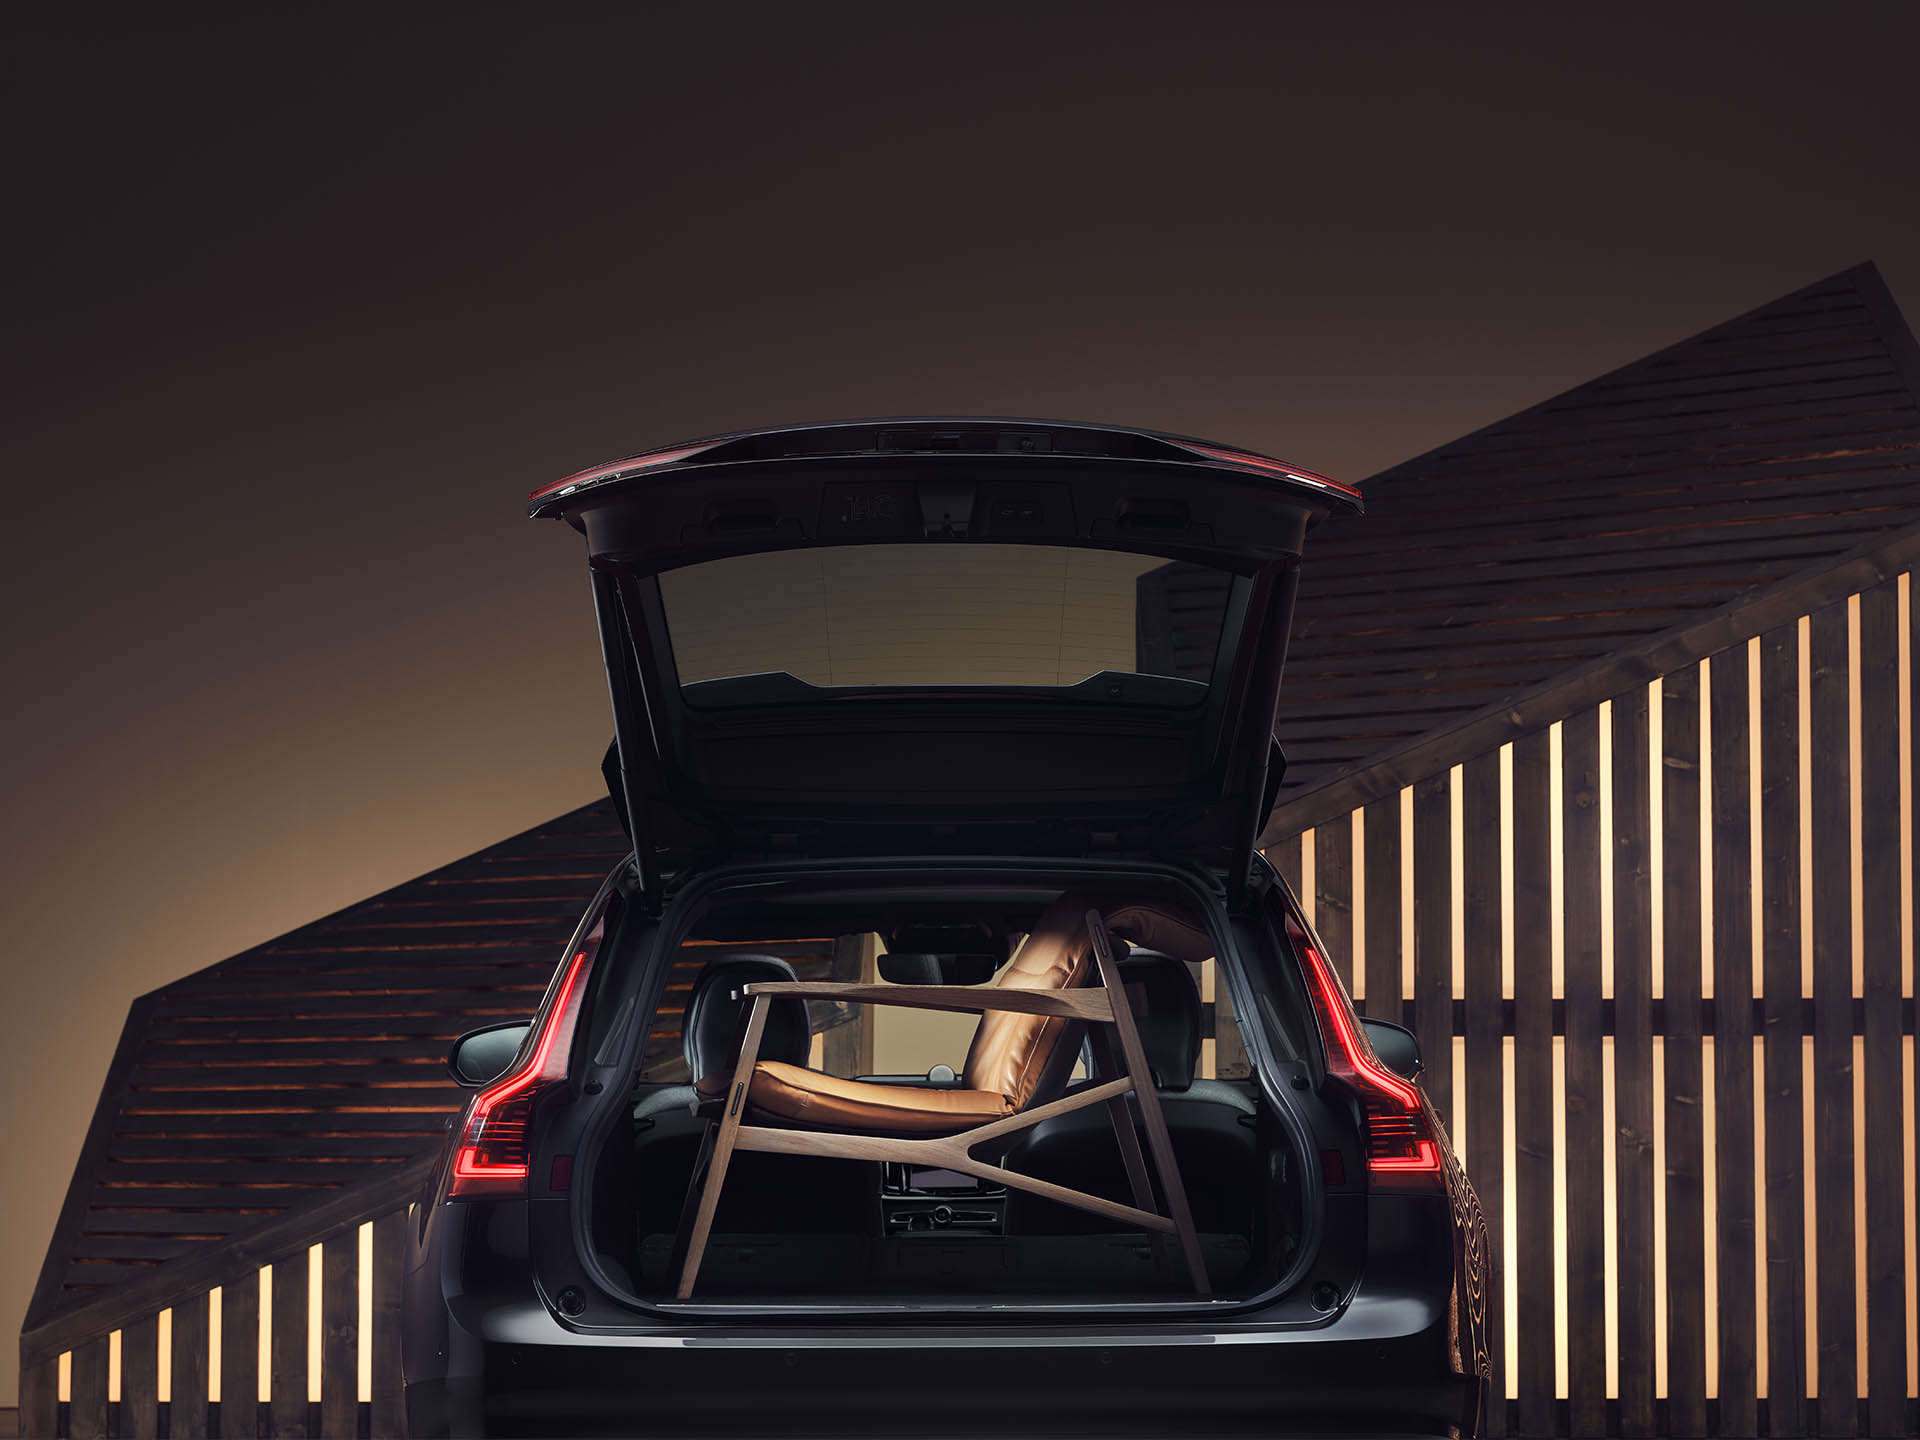 Багажниот простор на караванот Volvo е дополнет со кафена елегантна фотелја